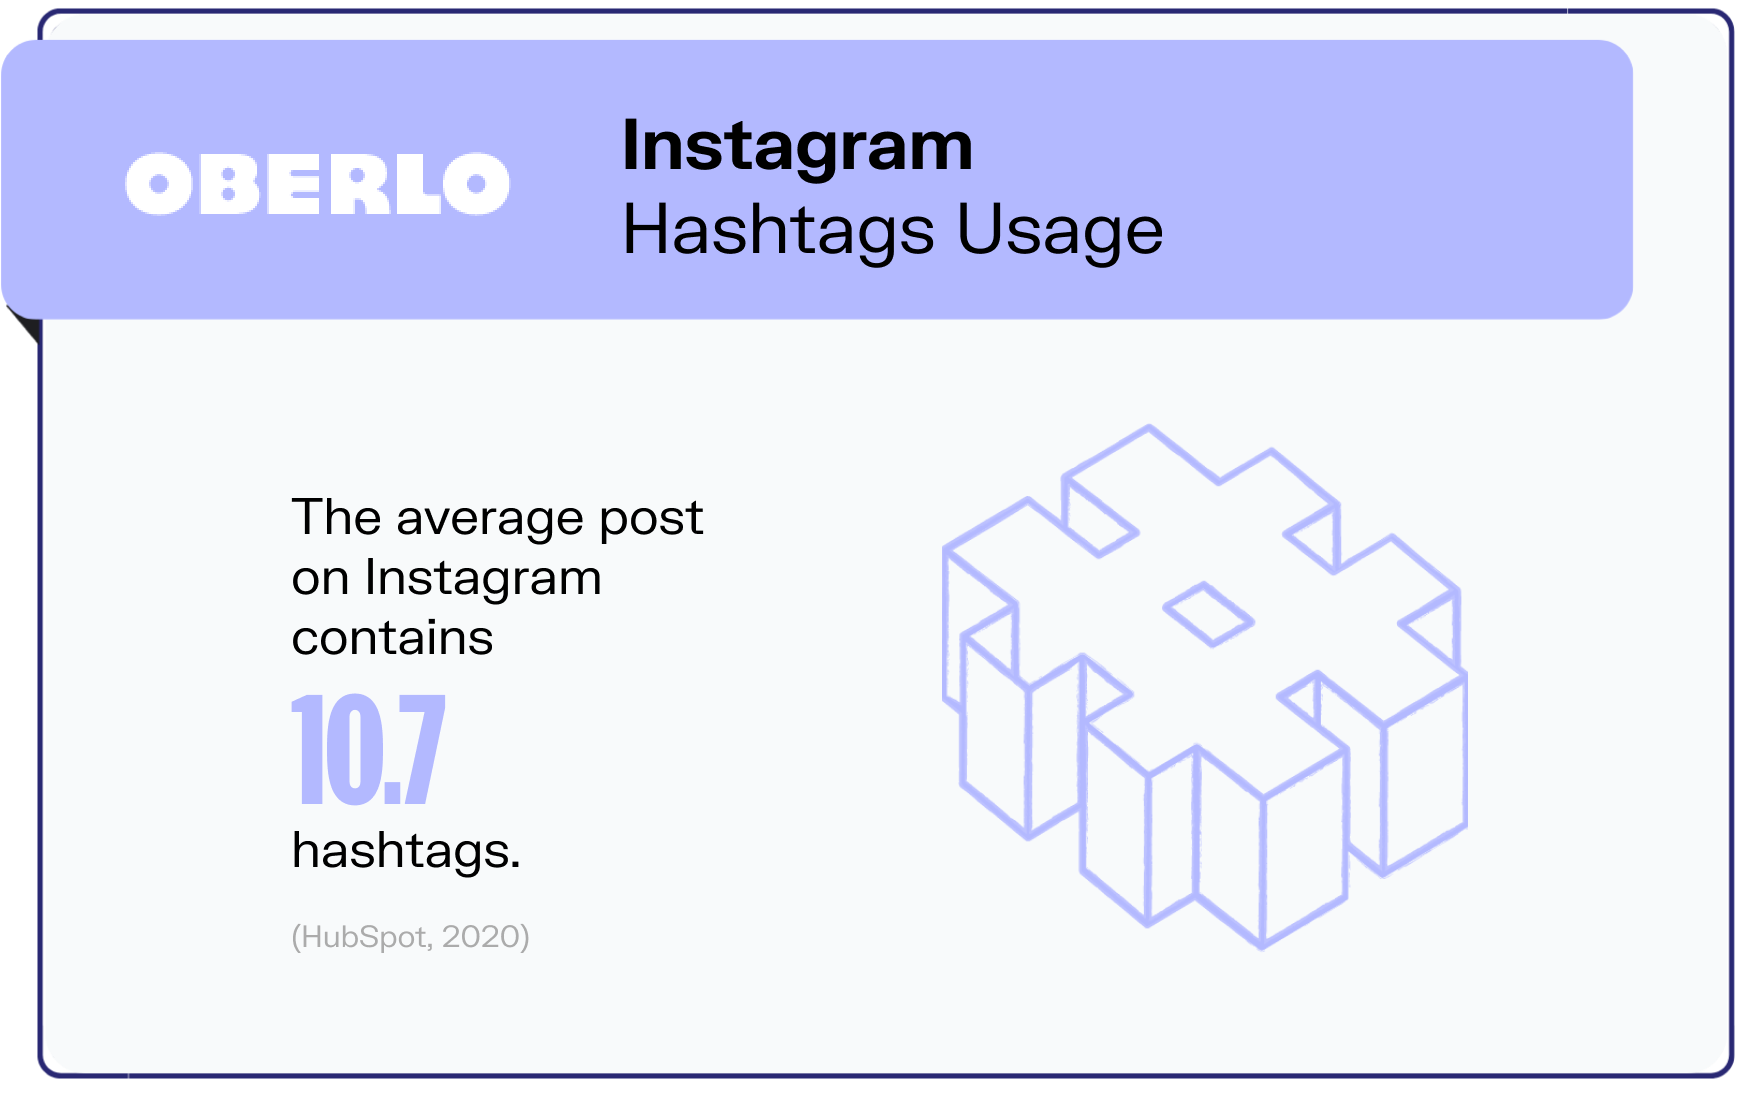 statistiques instagram graphic2